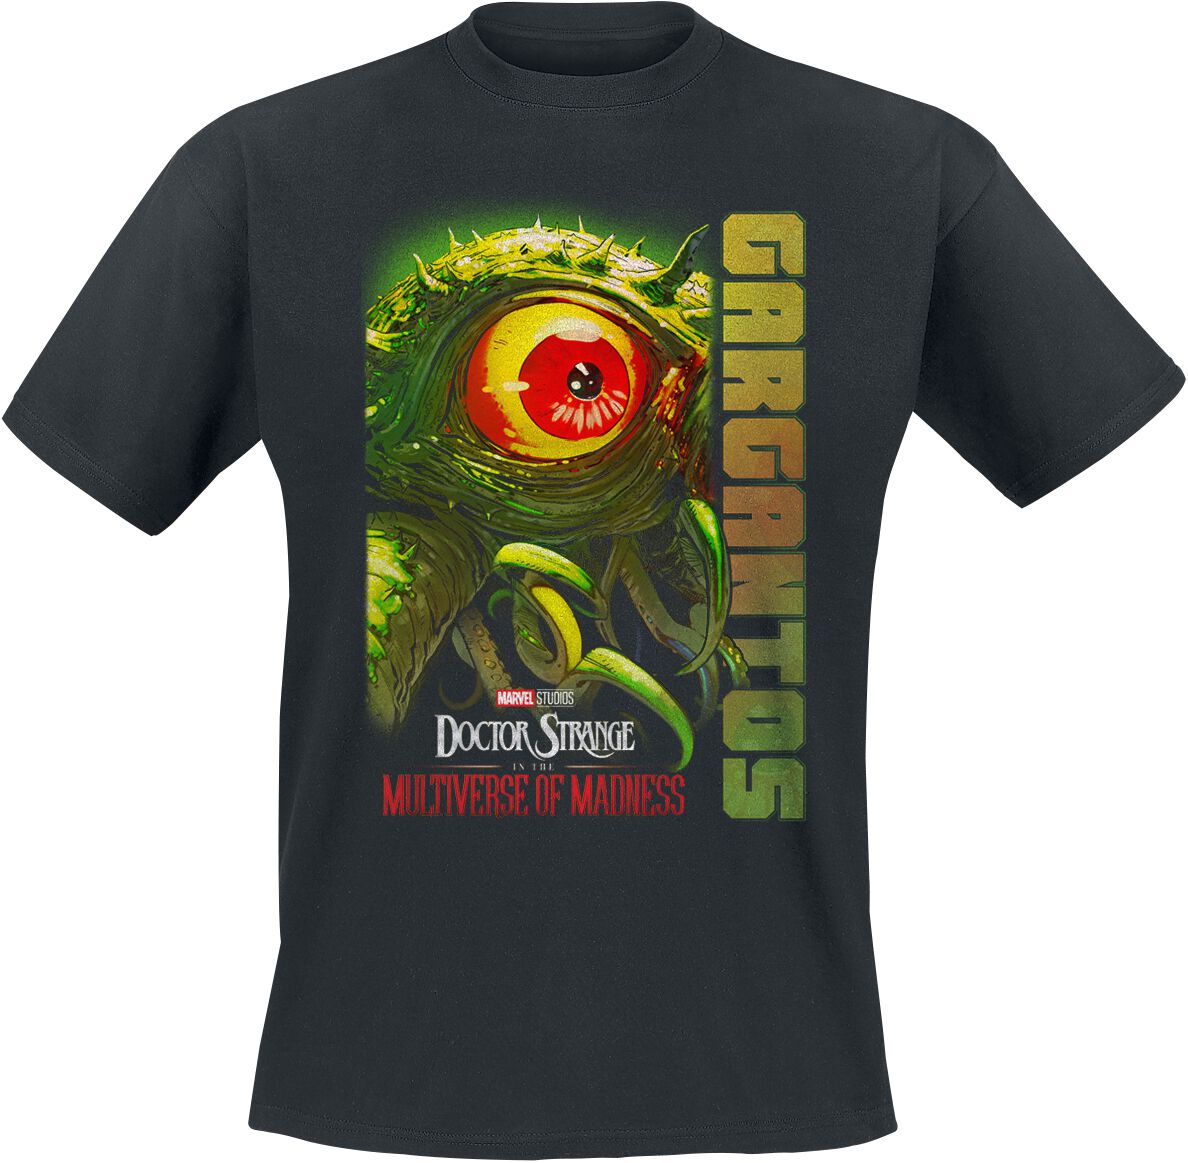 Doctor Strange In the Multiverse of Madness - Gargantos Eye T-Shirt black